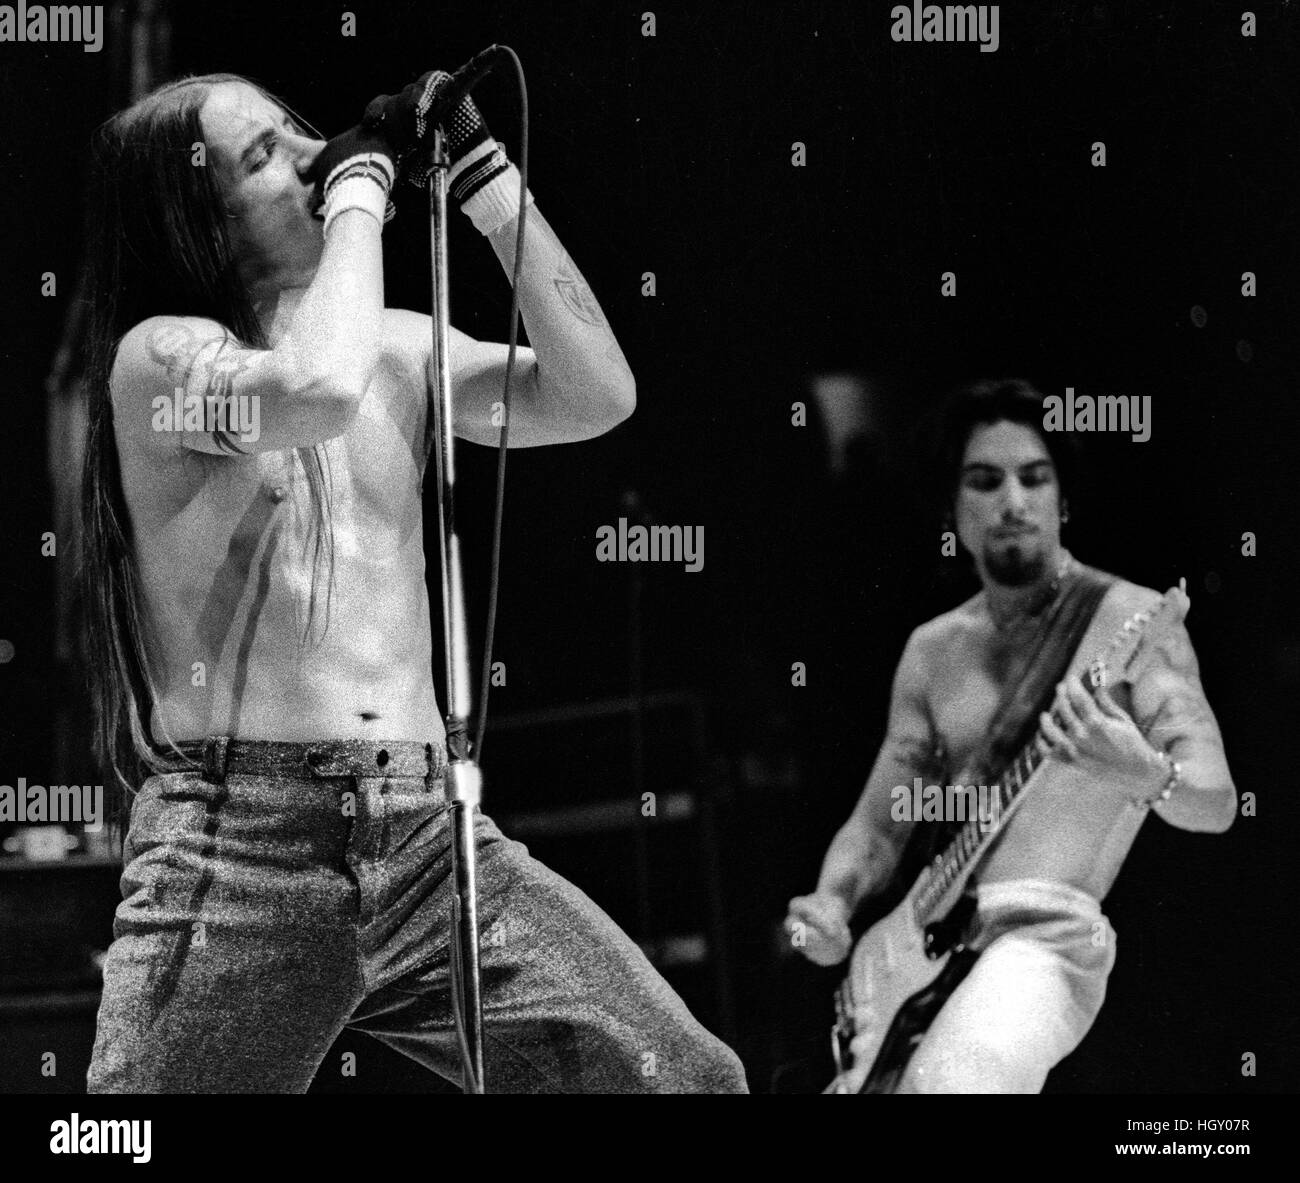 Red Hot Chili Peppers Band Anthony Kiedis (links) und Dave Navarro (rechts) im Konzert am großen Holz, Mansfield Ma USA 1992 Foto von Bill belknap Stockfoto